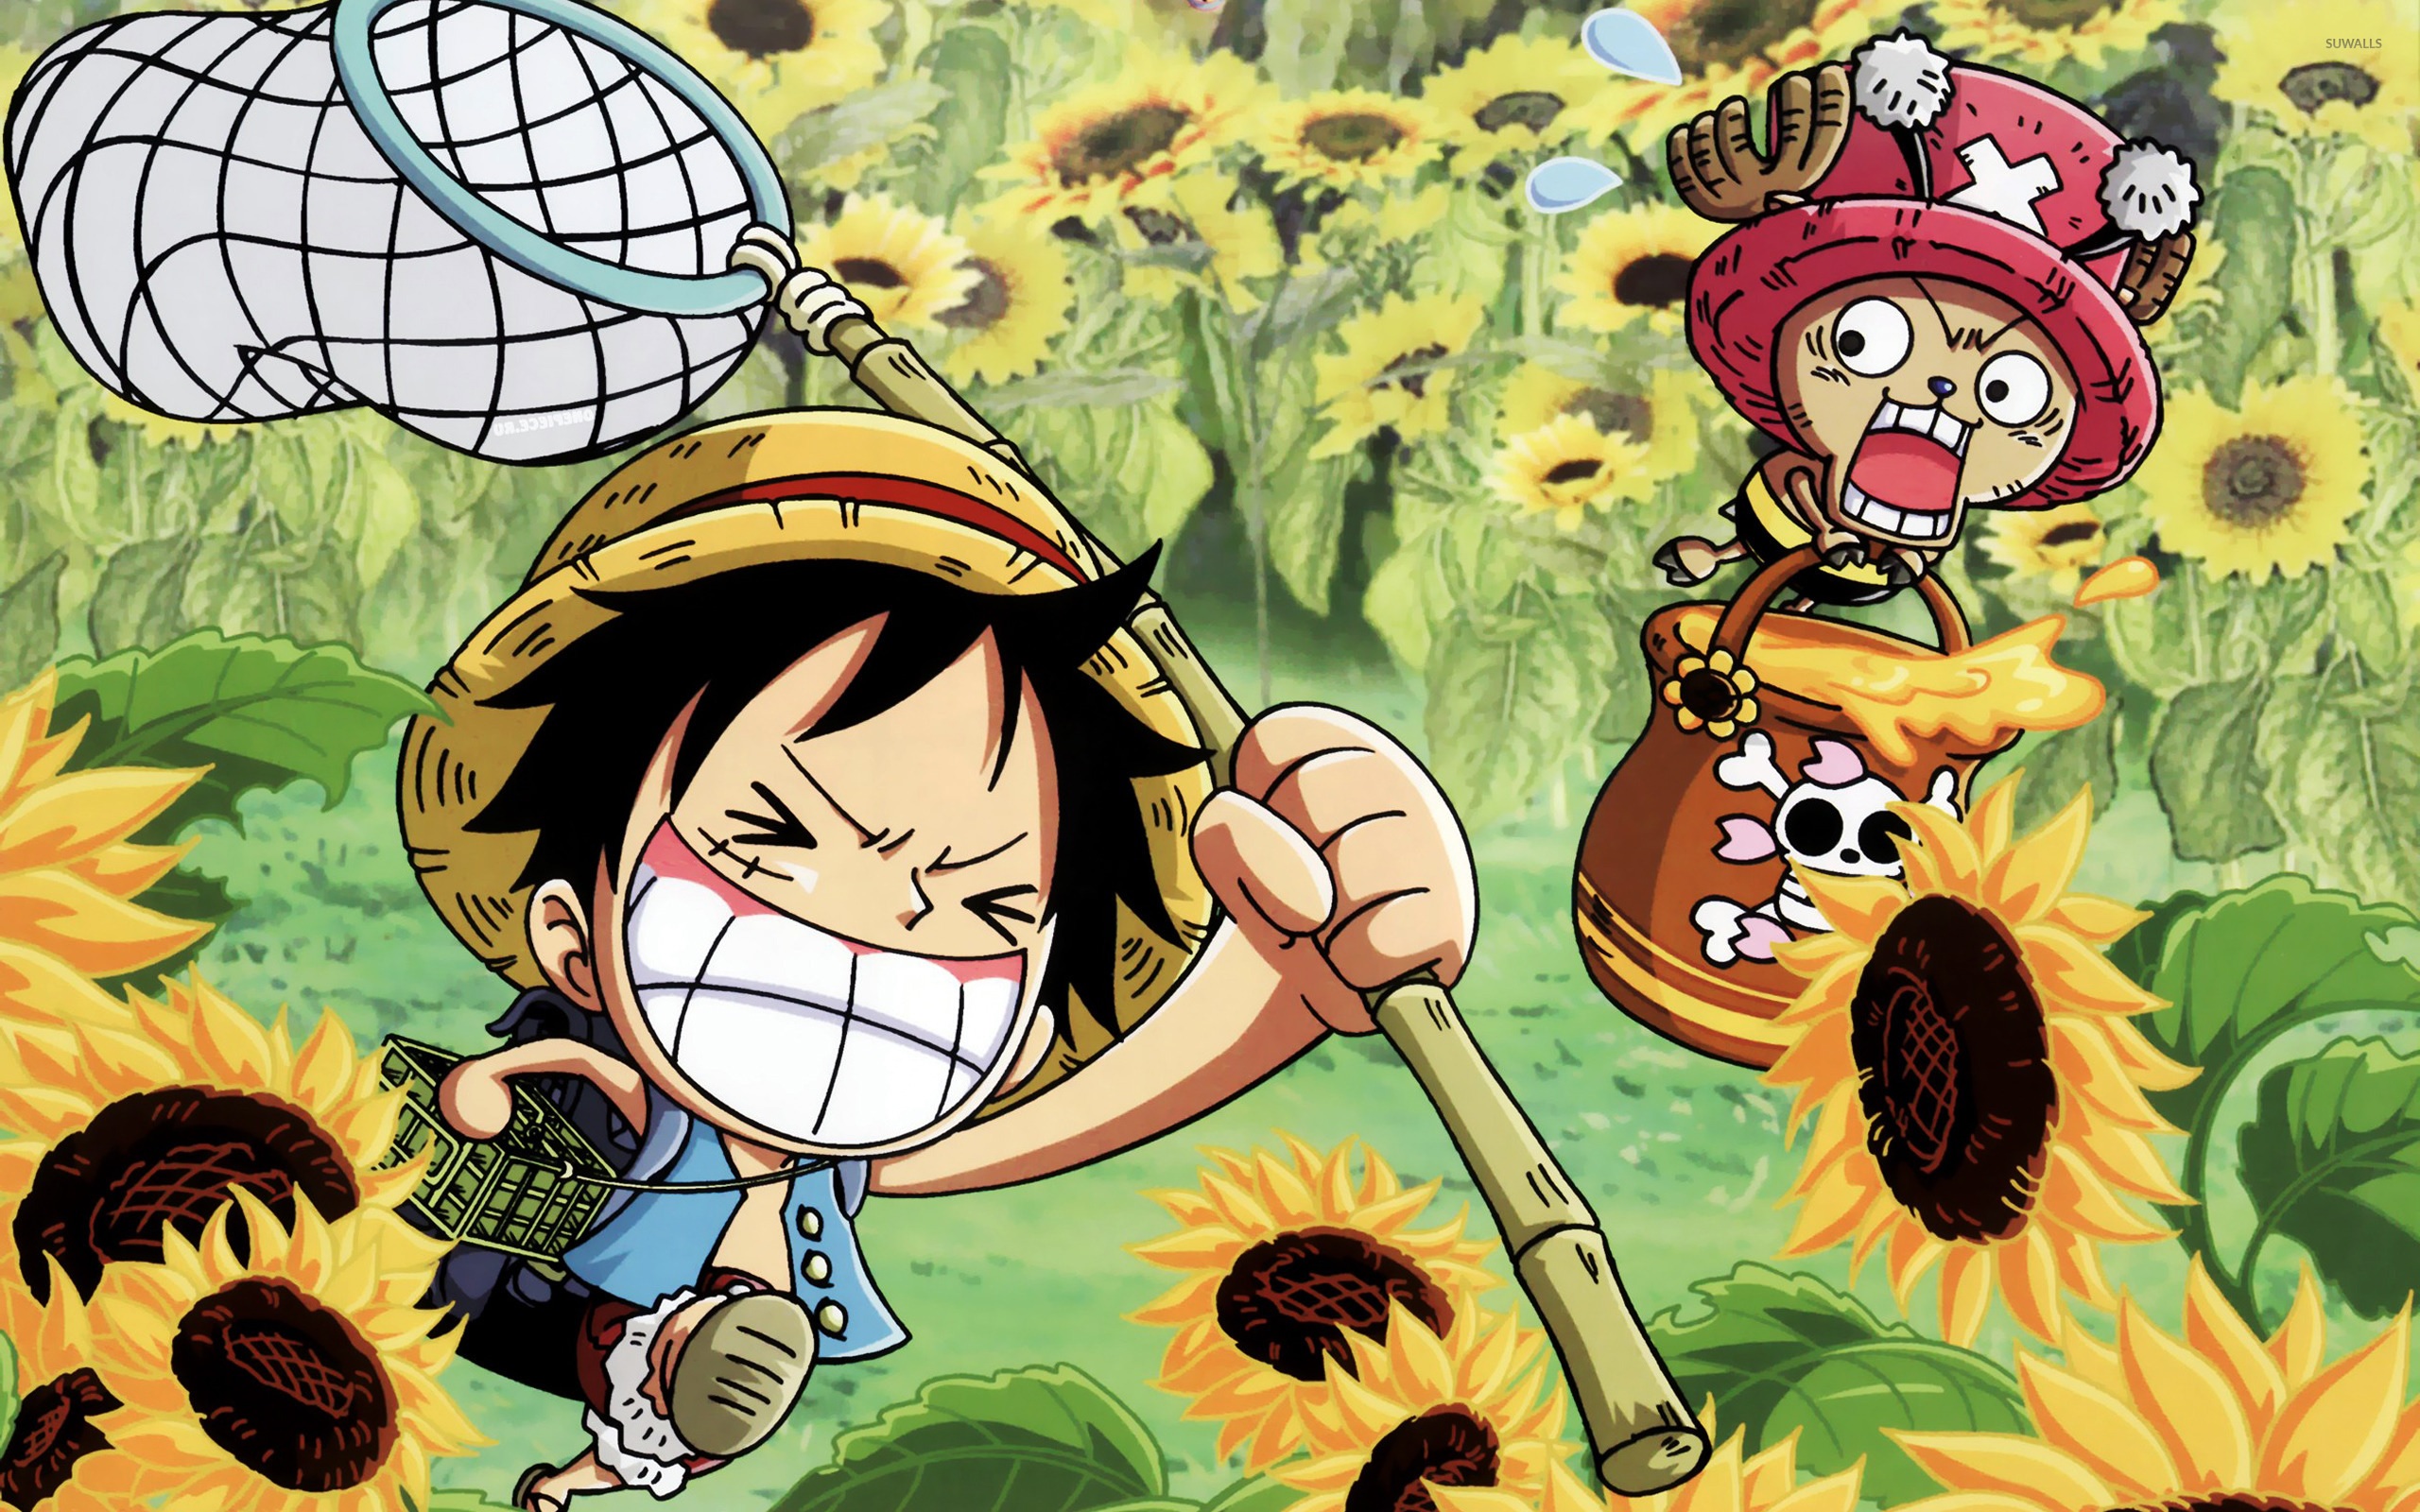 Hình Nền One Piece Ngầu, Đẹp, Chất Lượng 4K | HacoLED